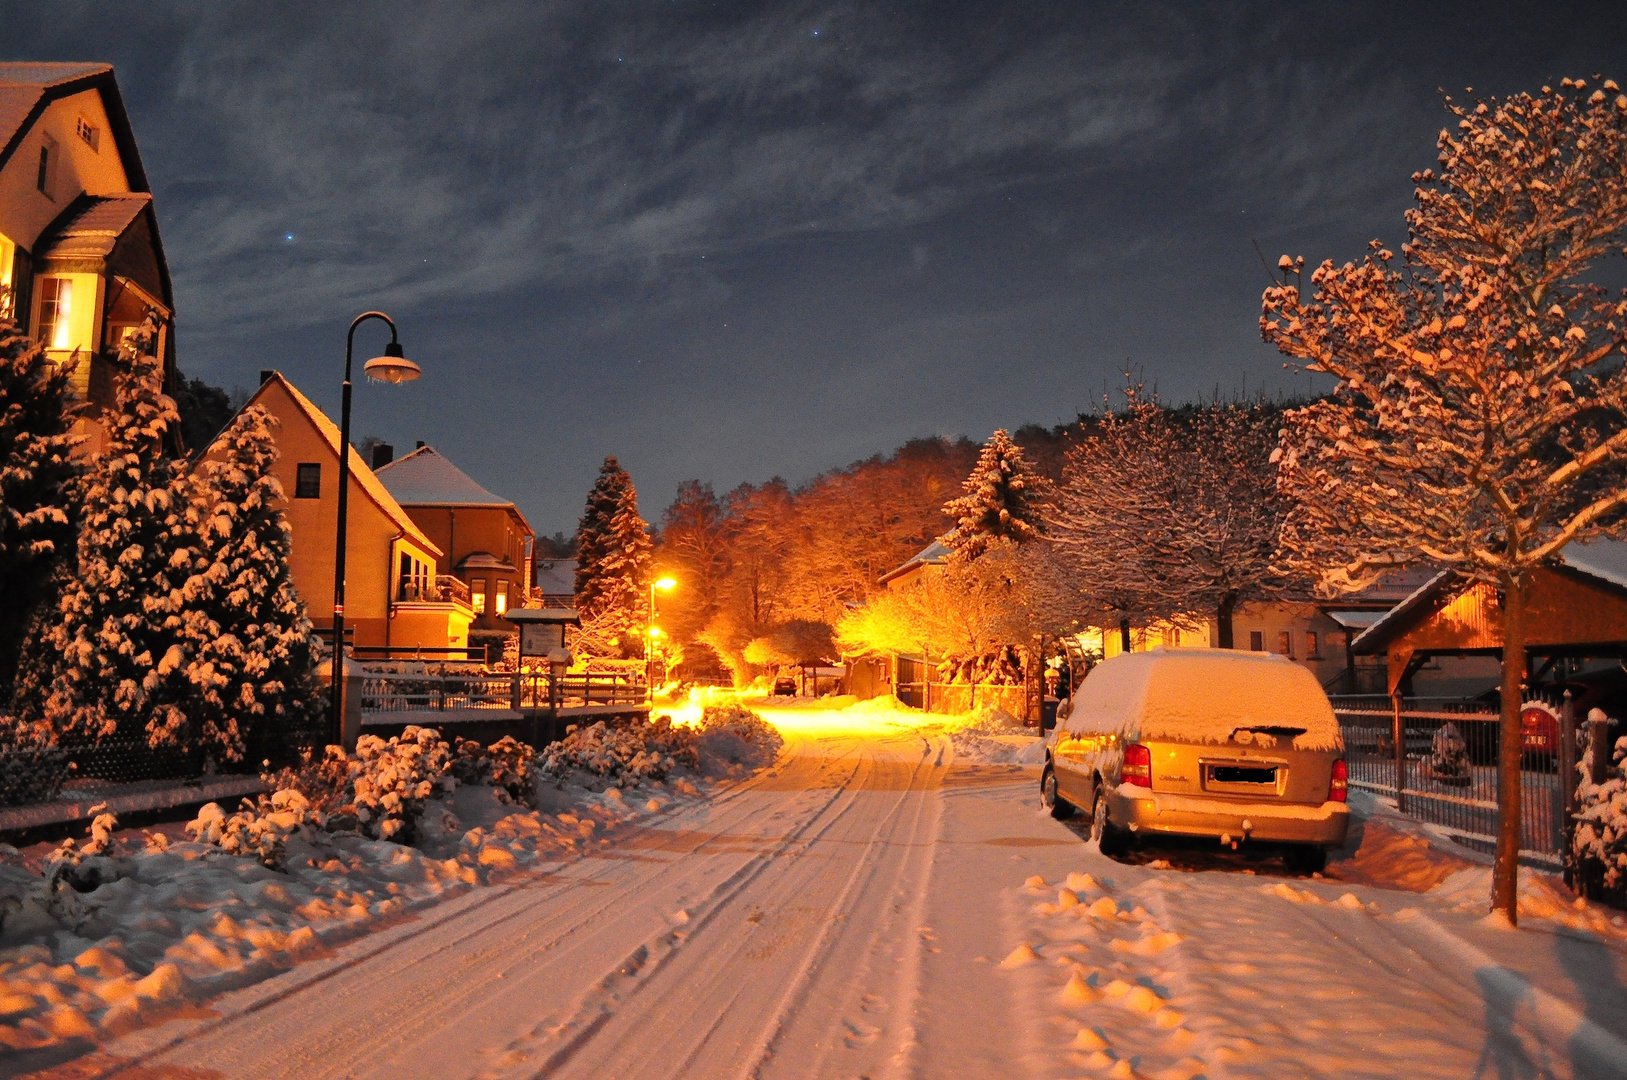 Winternacht in Falkenberg (2)